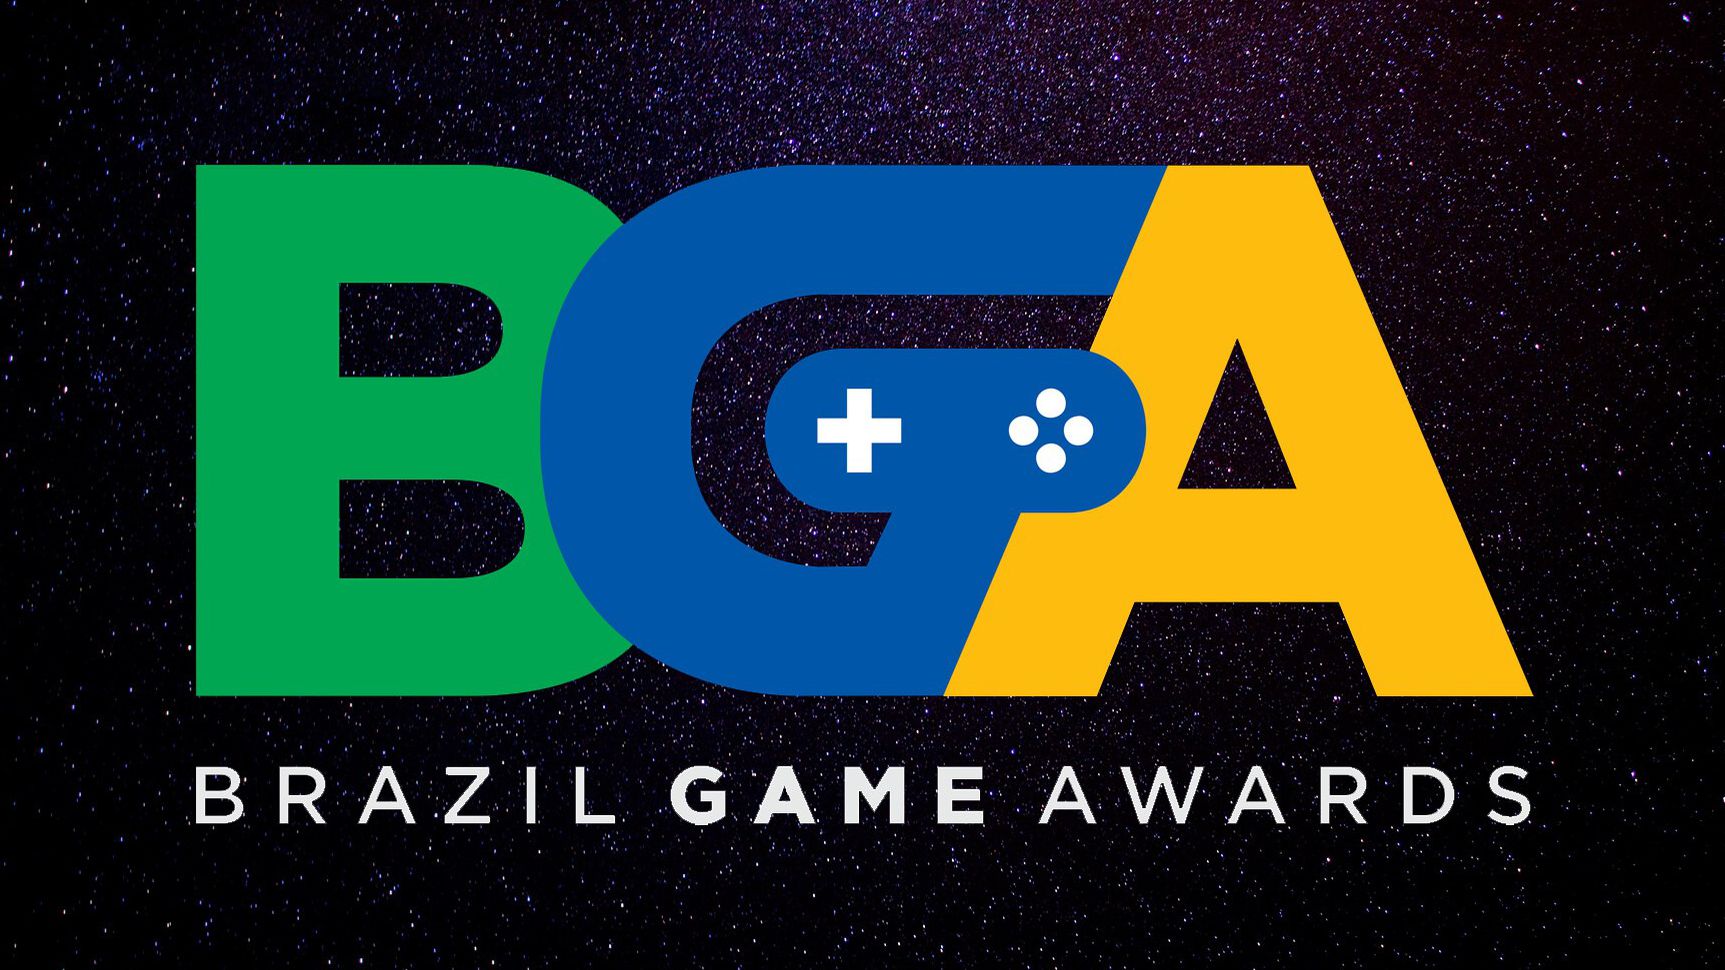 BRKsEDU GAME AWARDS 2017 - Os Melhores Jogos do Ano! 